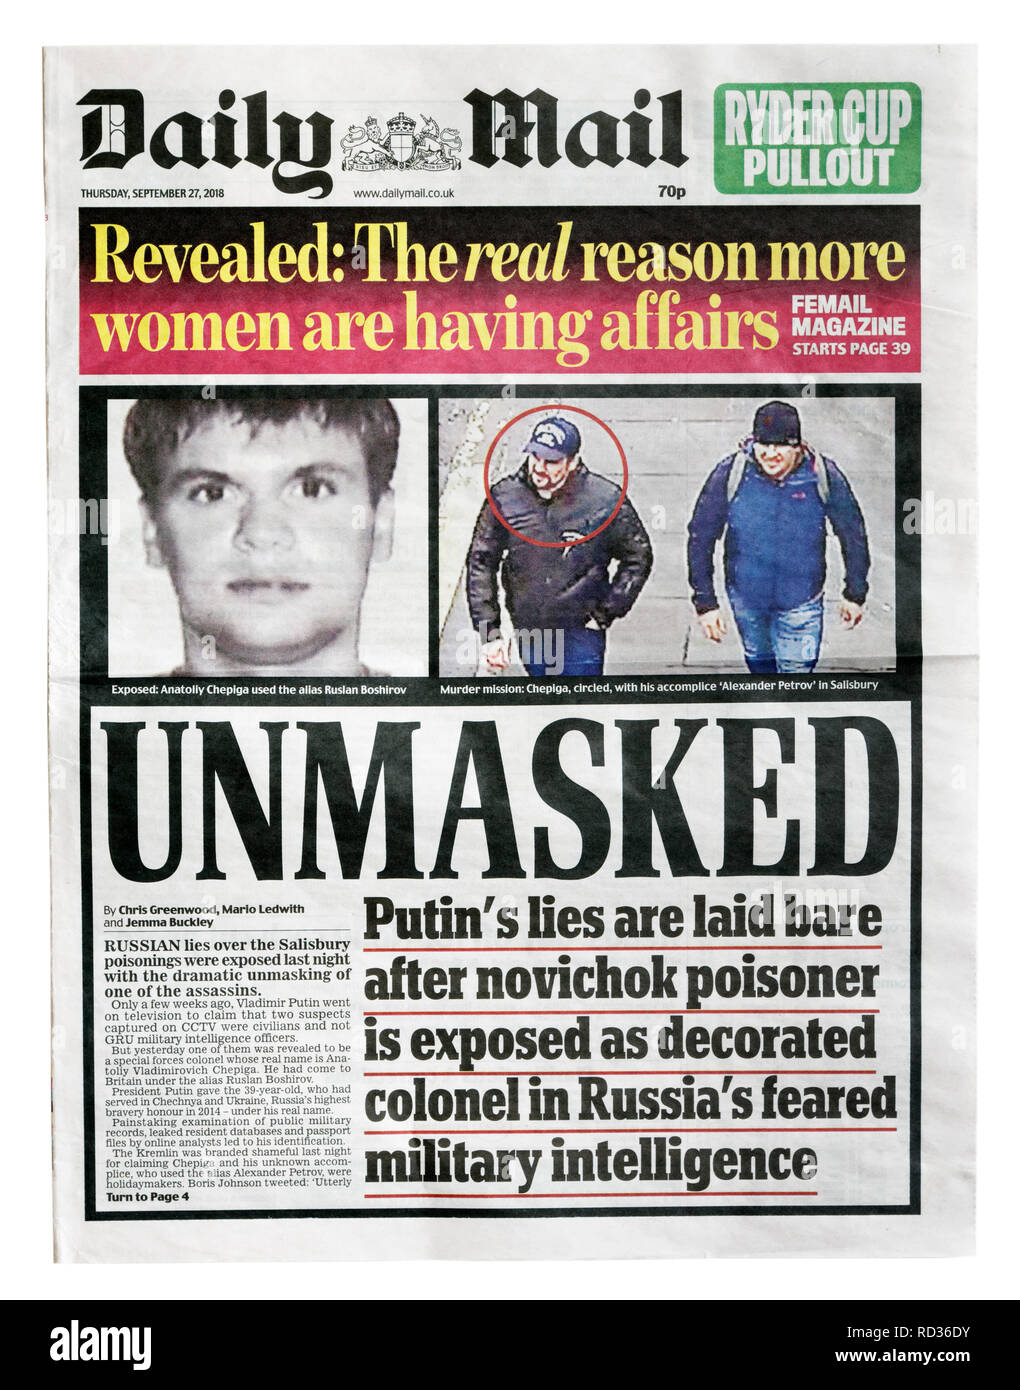 La première page du Daily Mail du 27 septembre 2018 avec le titre démasqué, l'identification de l'empoisonneur Novichok comme un colonel russe Banque D'Images